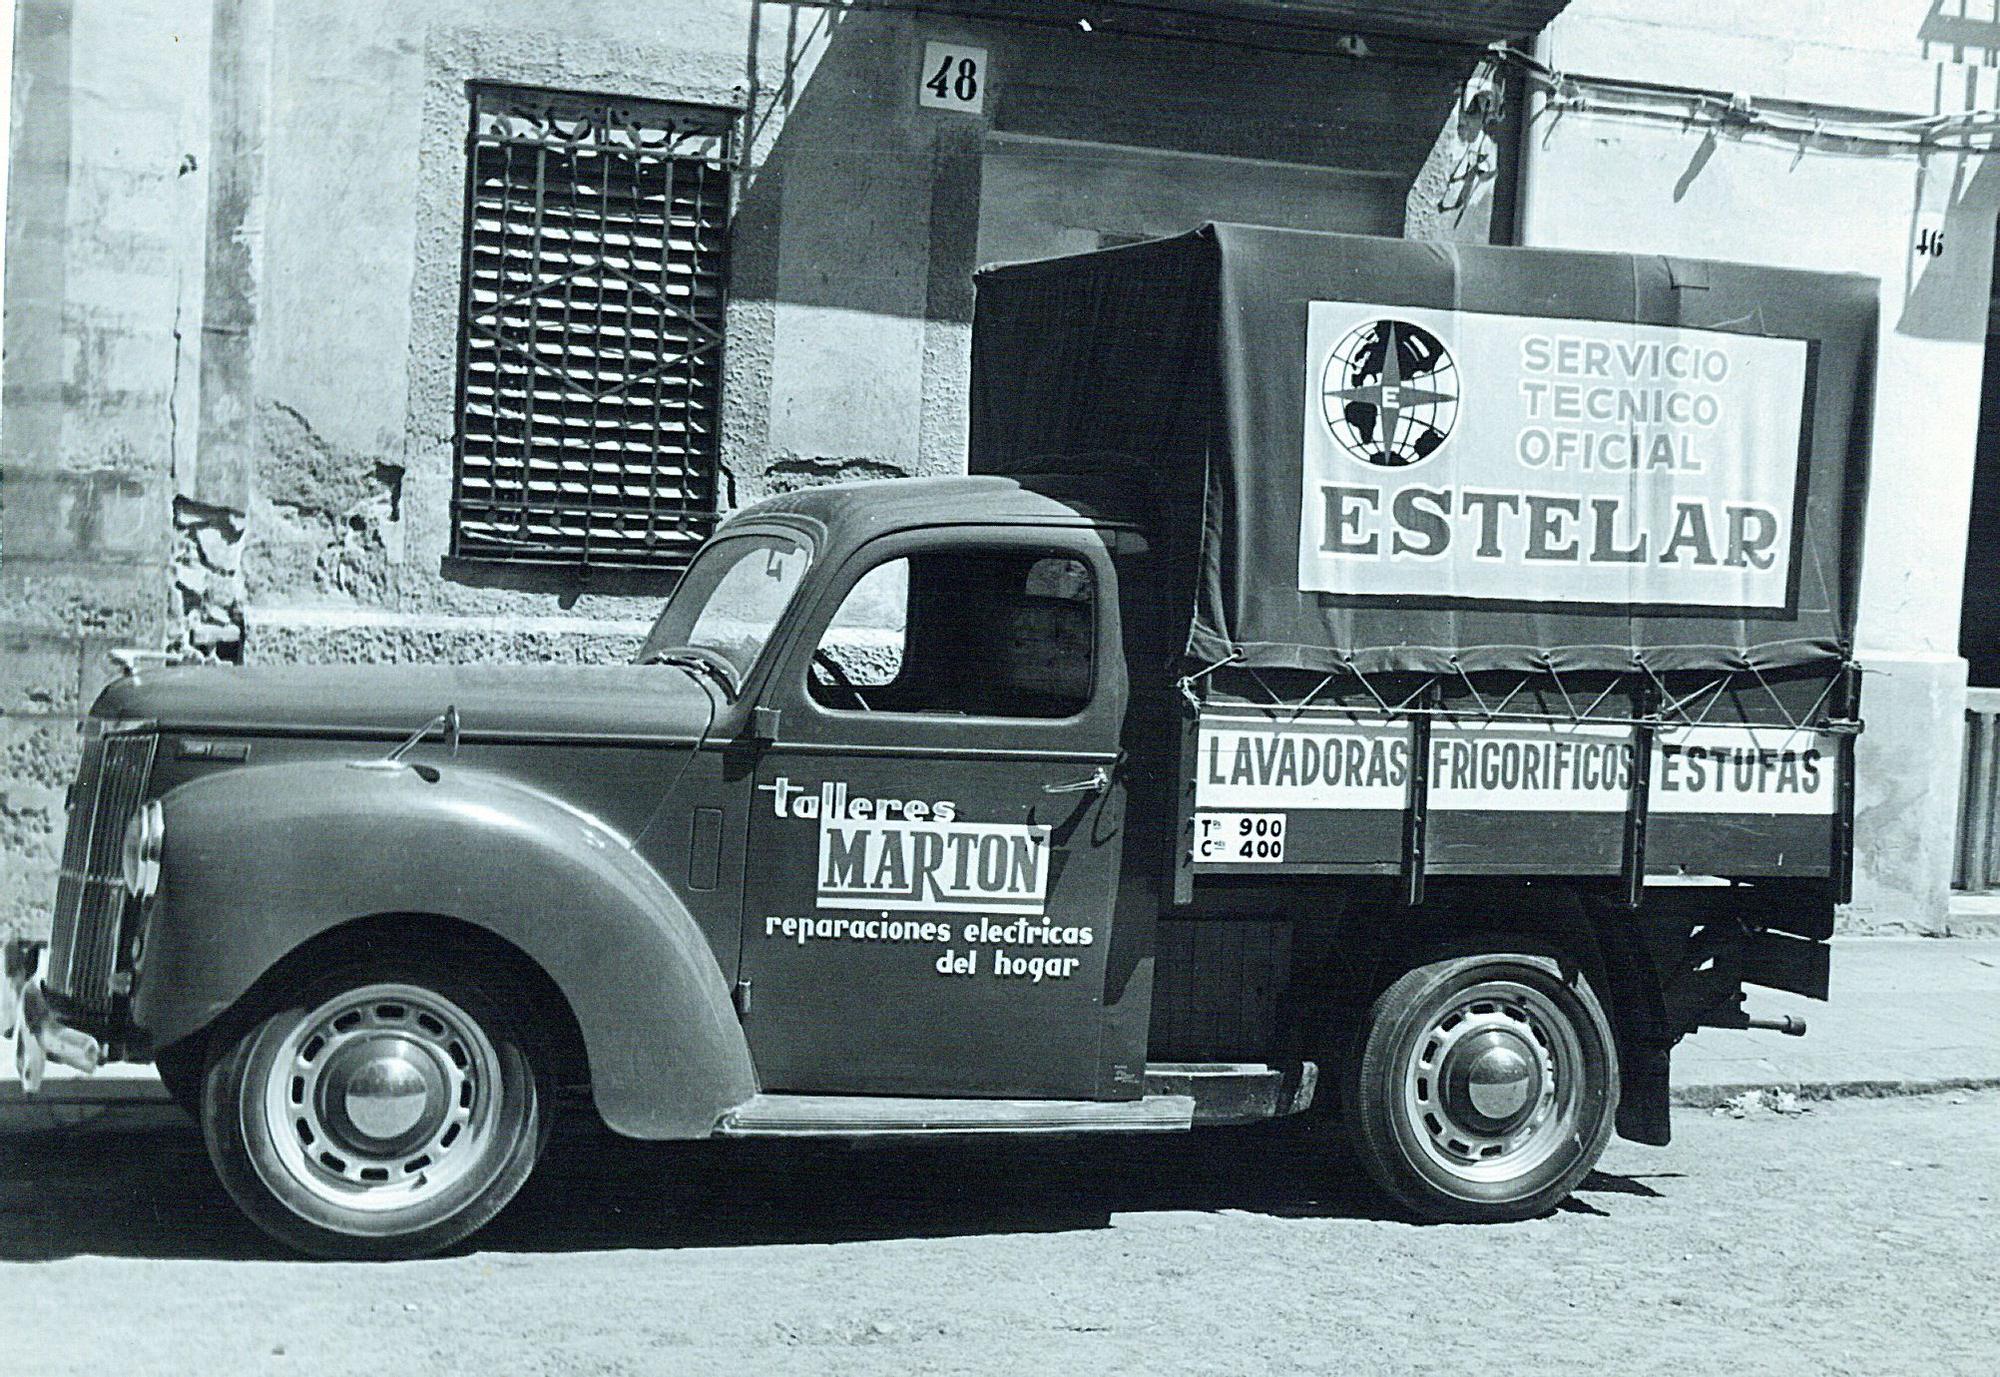 Imágenes históricas de Marton, negocio histórico de Castellón